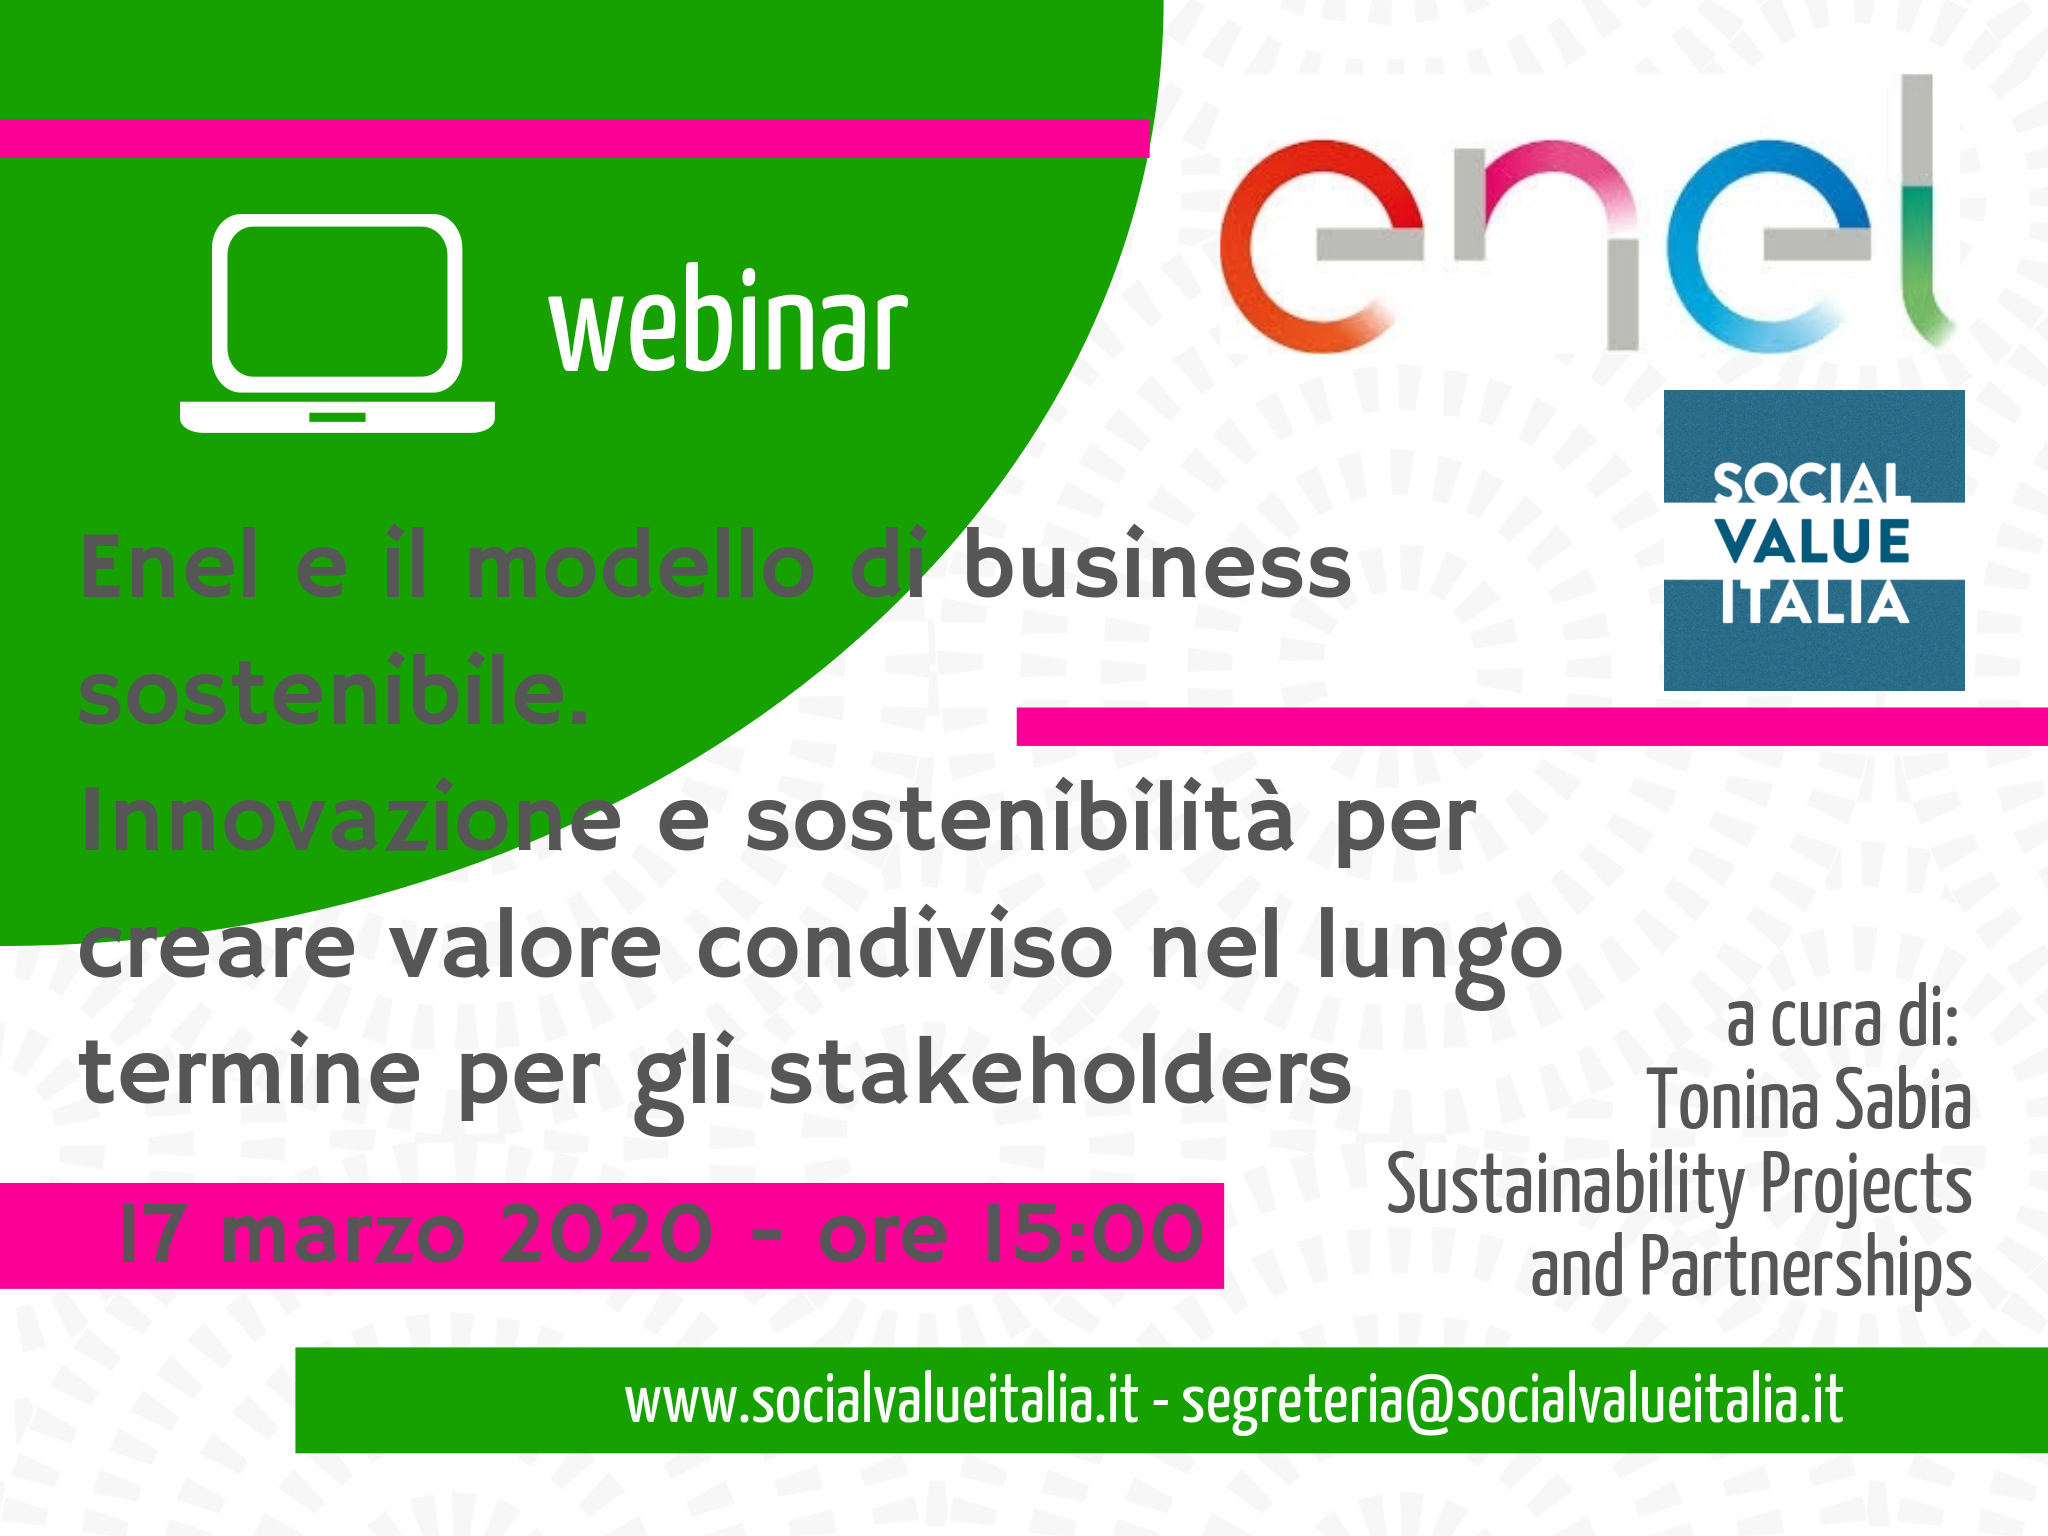 Webinar: Enel e il modello di business sostenibile